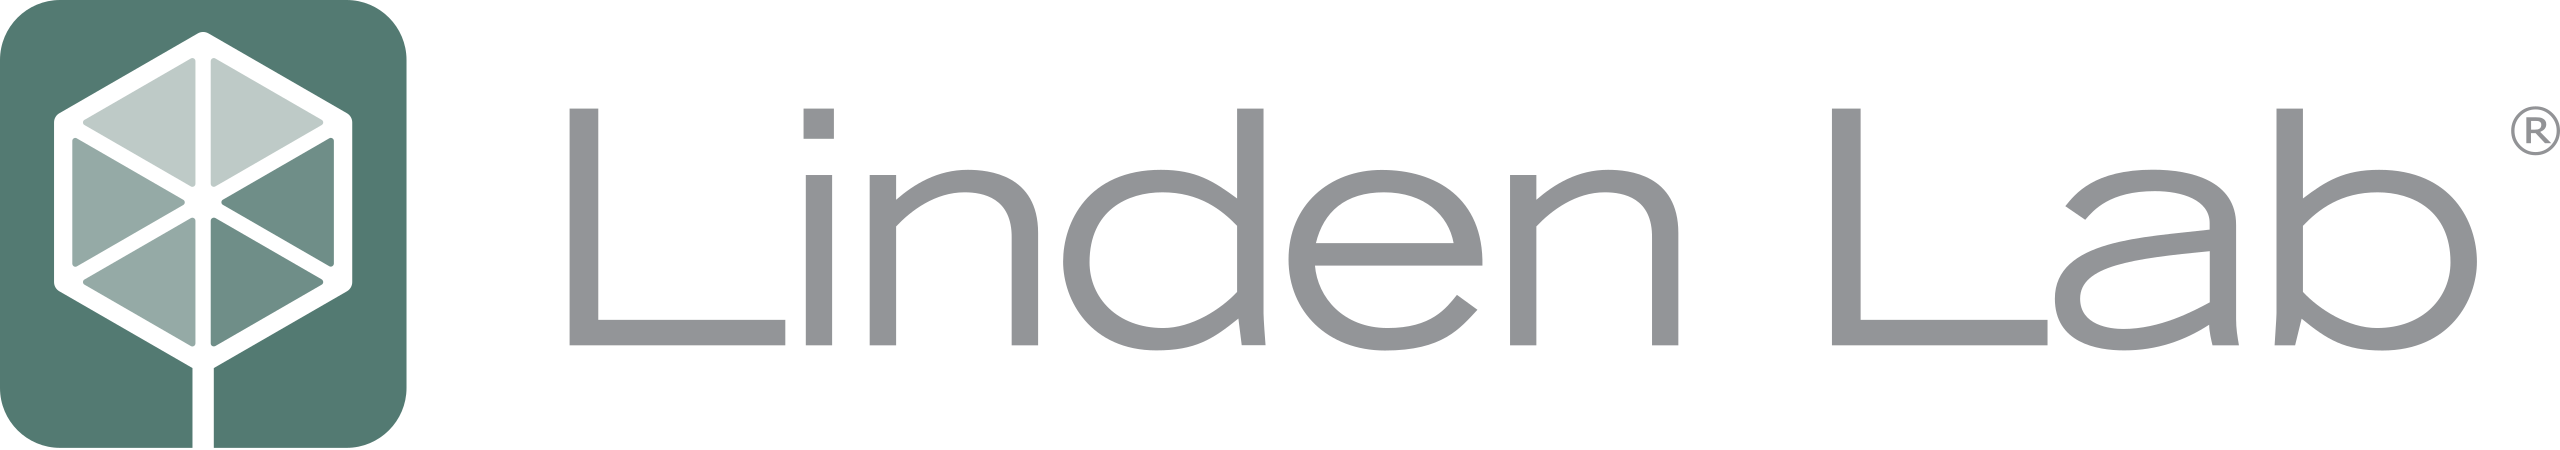 Linden_Lab_logo.svg